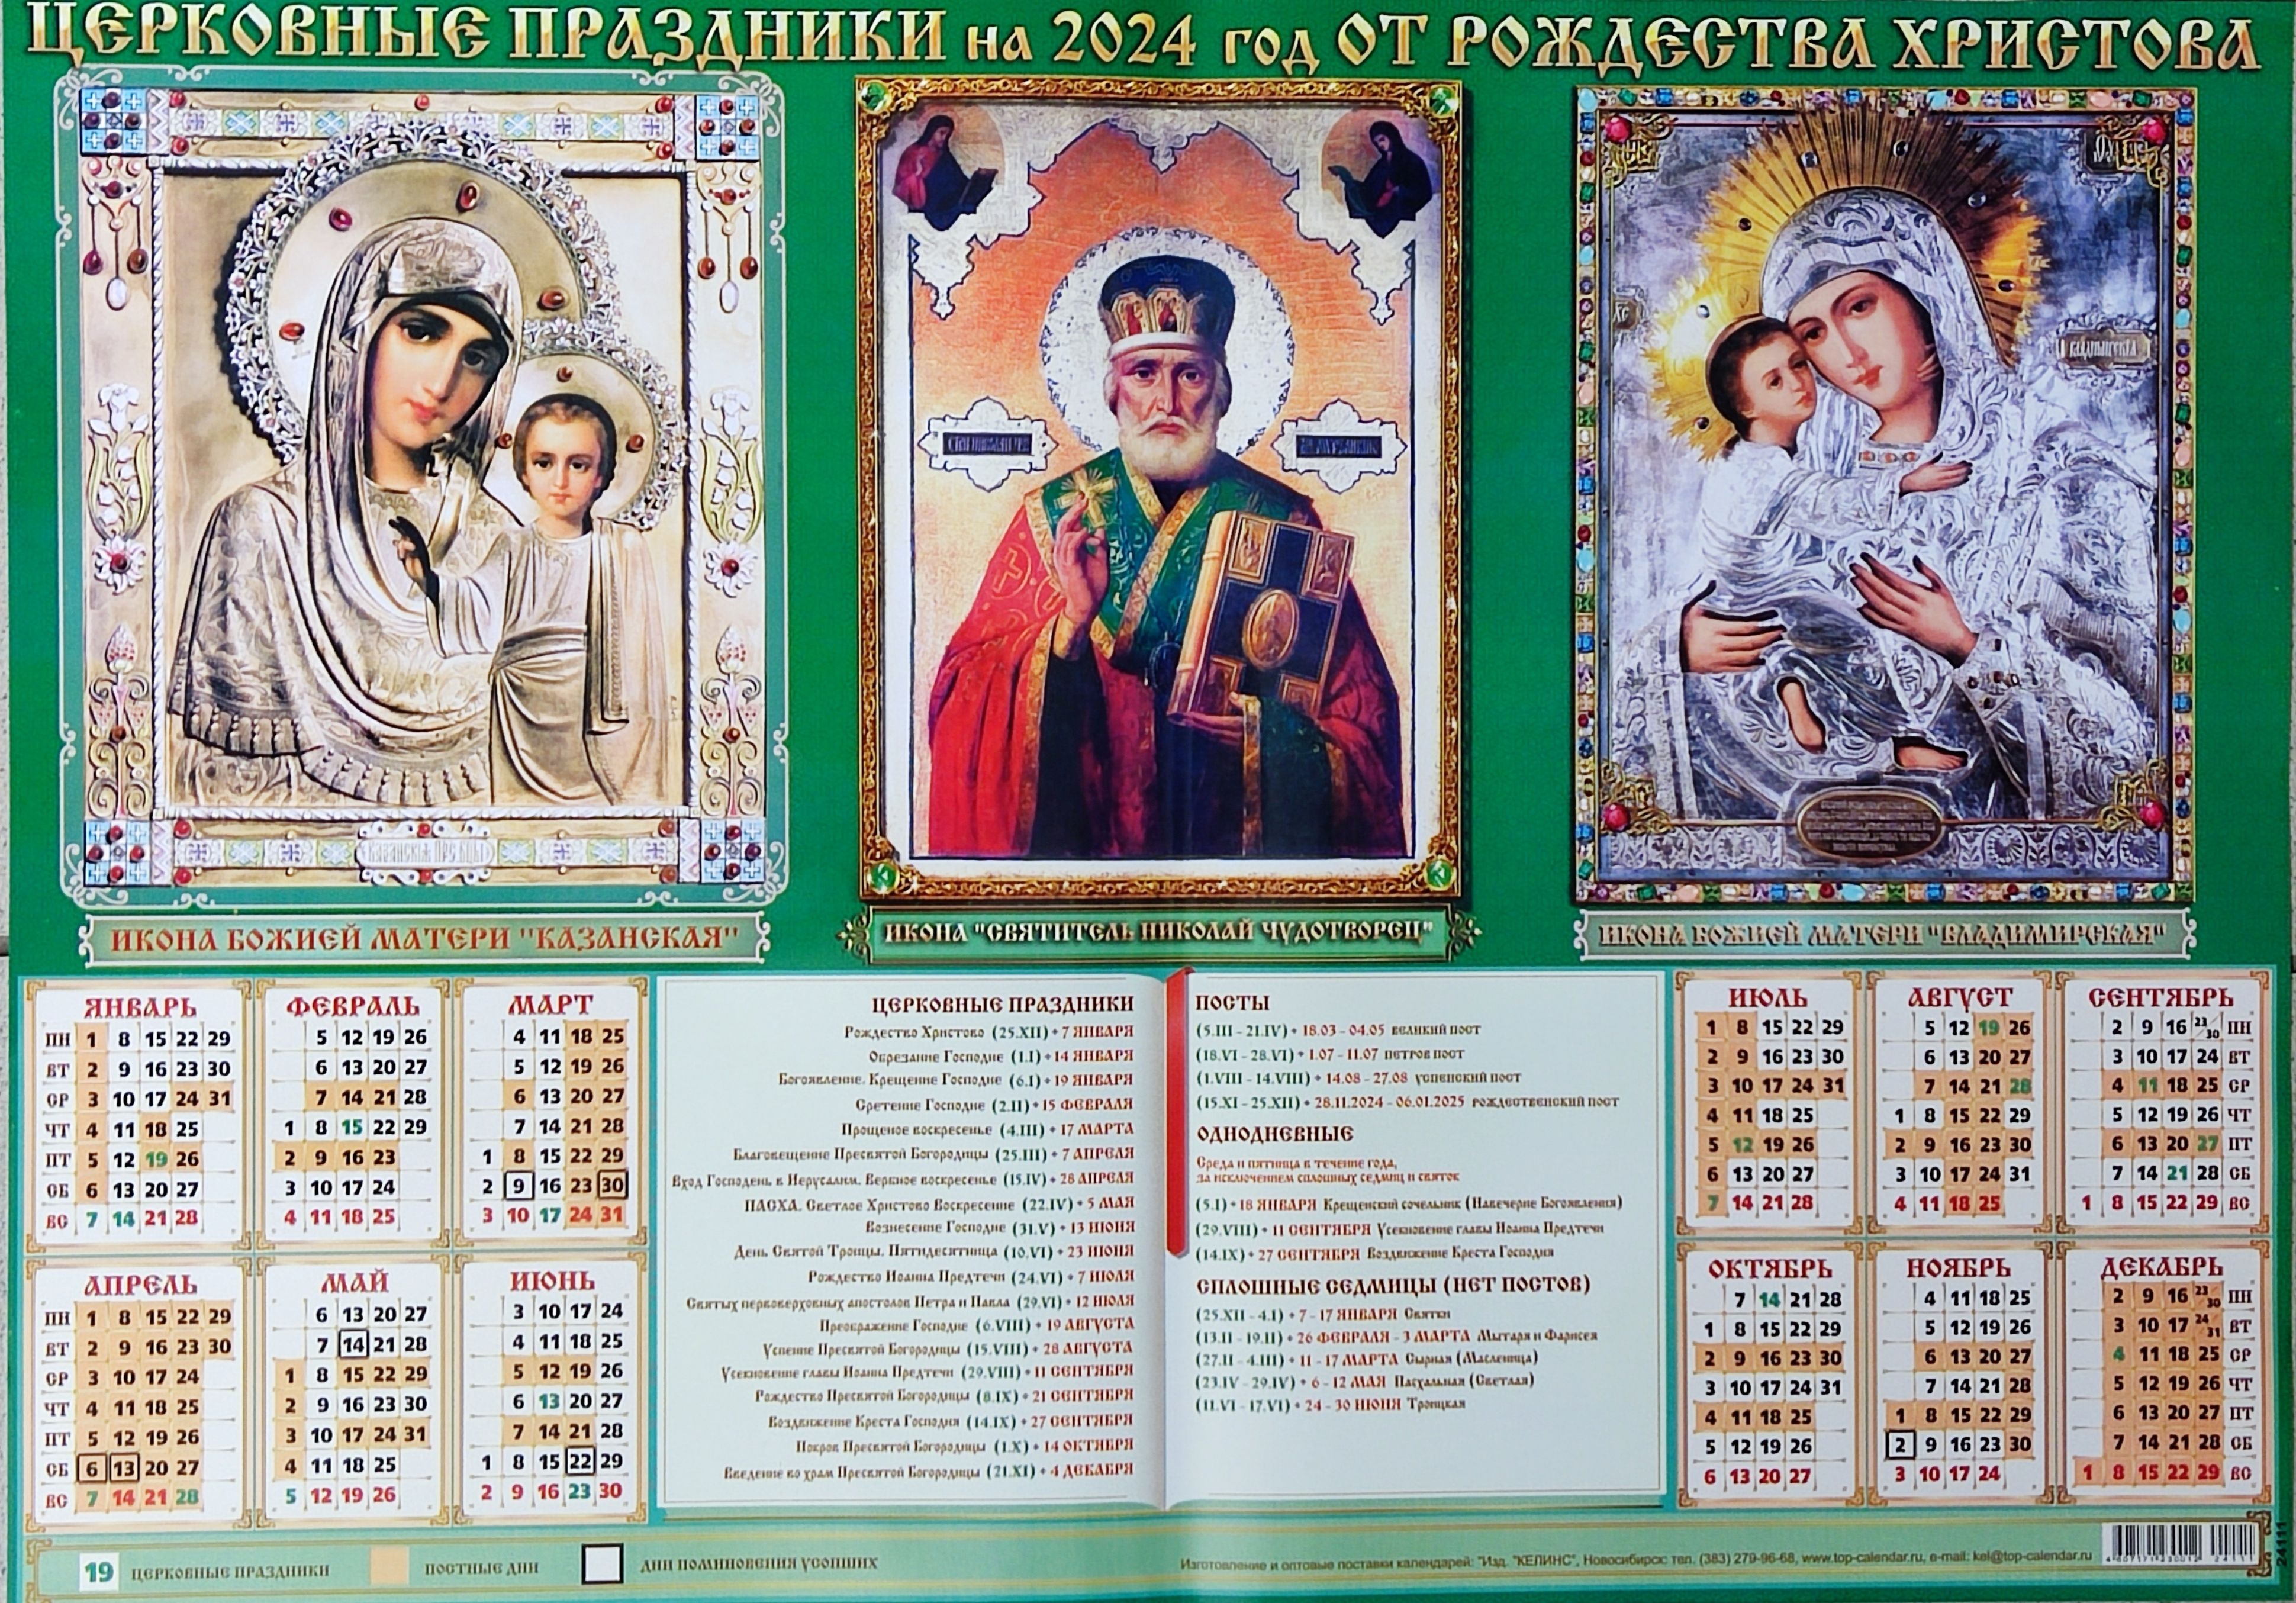 Православный календарь на 2024. Божественный календарь на 2024. Православный календарь на 2024 год. Пост православный 2024. 28 февраля праздник православный 2024 года какой